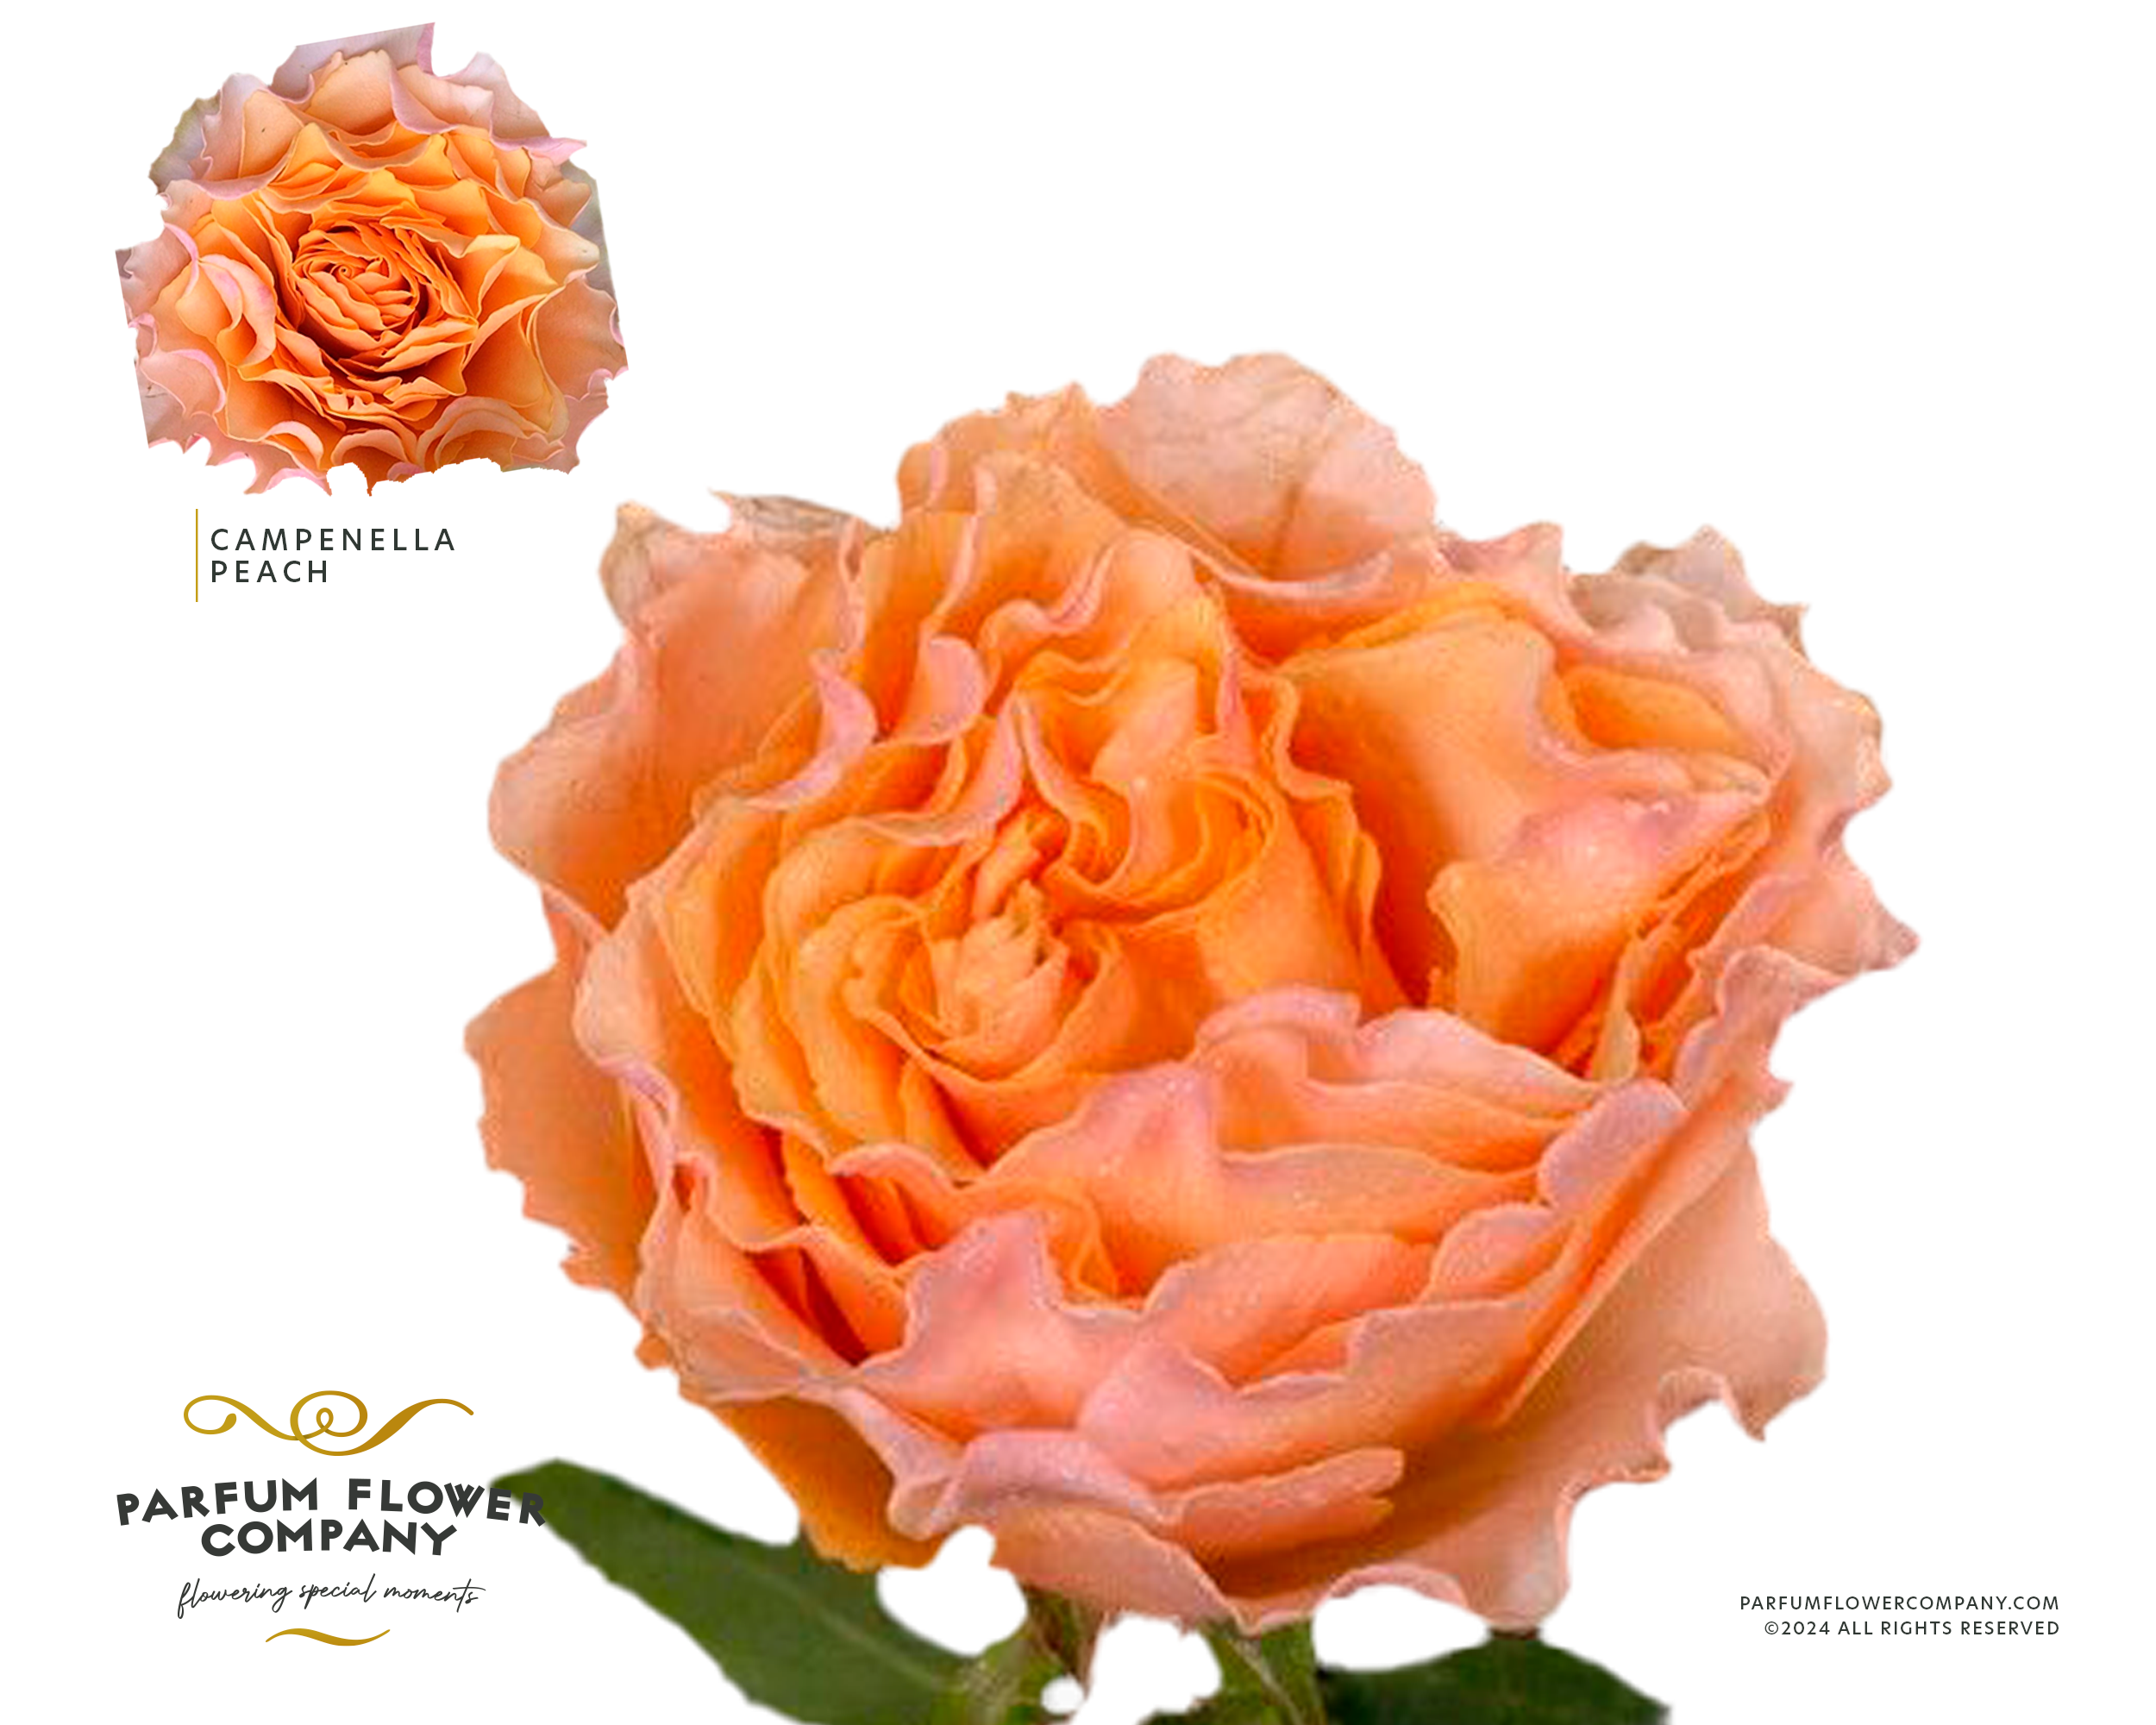 Срезанные цветы оптом Rosa la garden campanella peach от 24шт из Голландии с доставкой по России